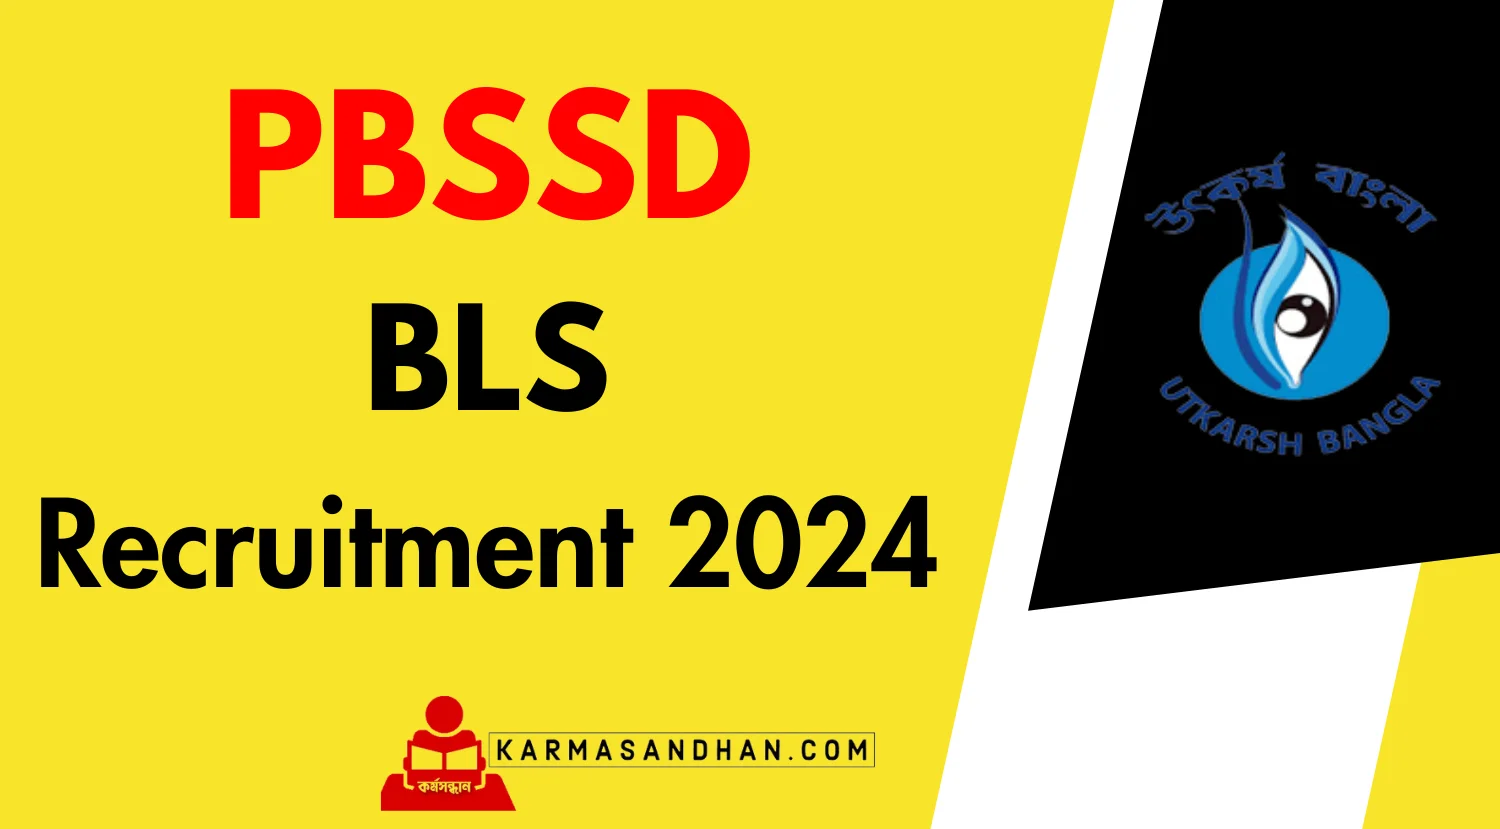 PBSSD BLS Recruitment 2024